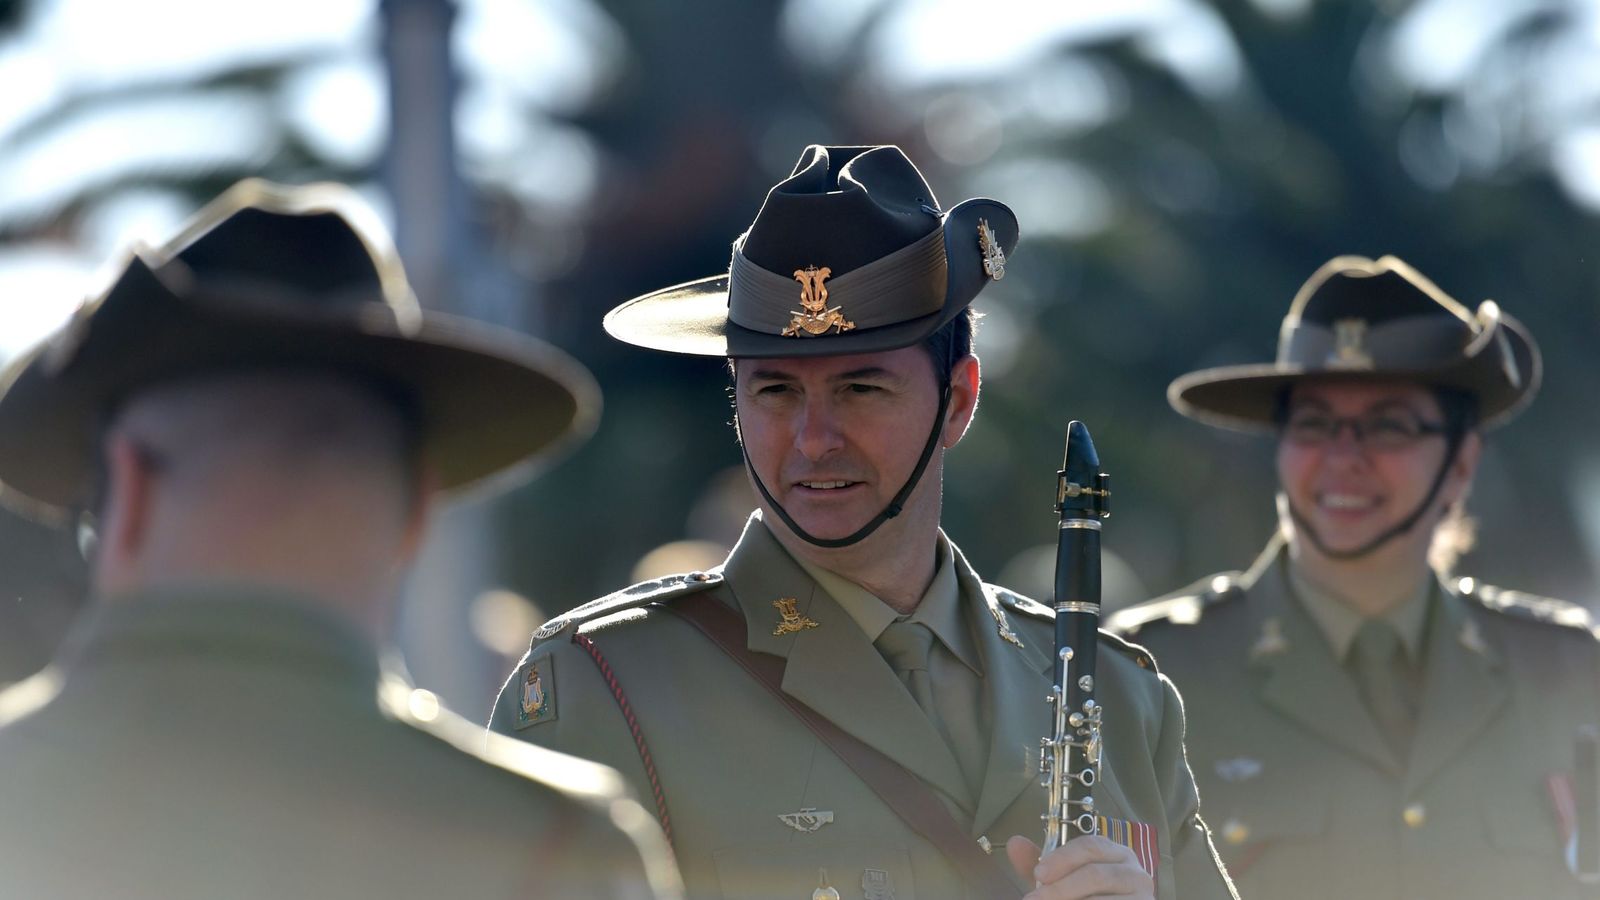 Foto: Soldados australianos en uniforme de gala durante el Día del Anzac, que conmemora la batalla de Gallipoli, el 25 de abril de 2016 (EFE)